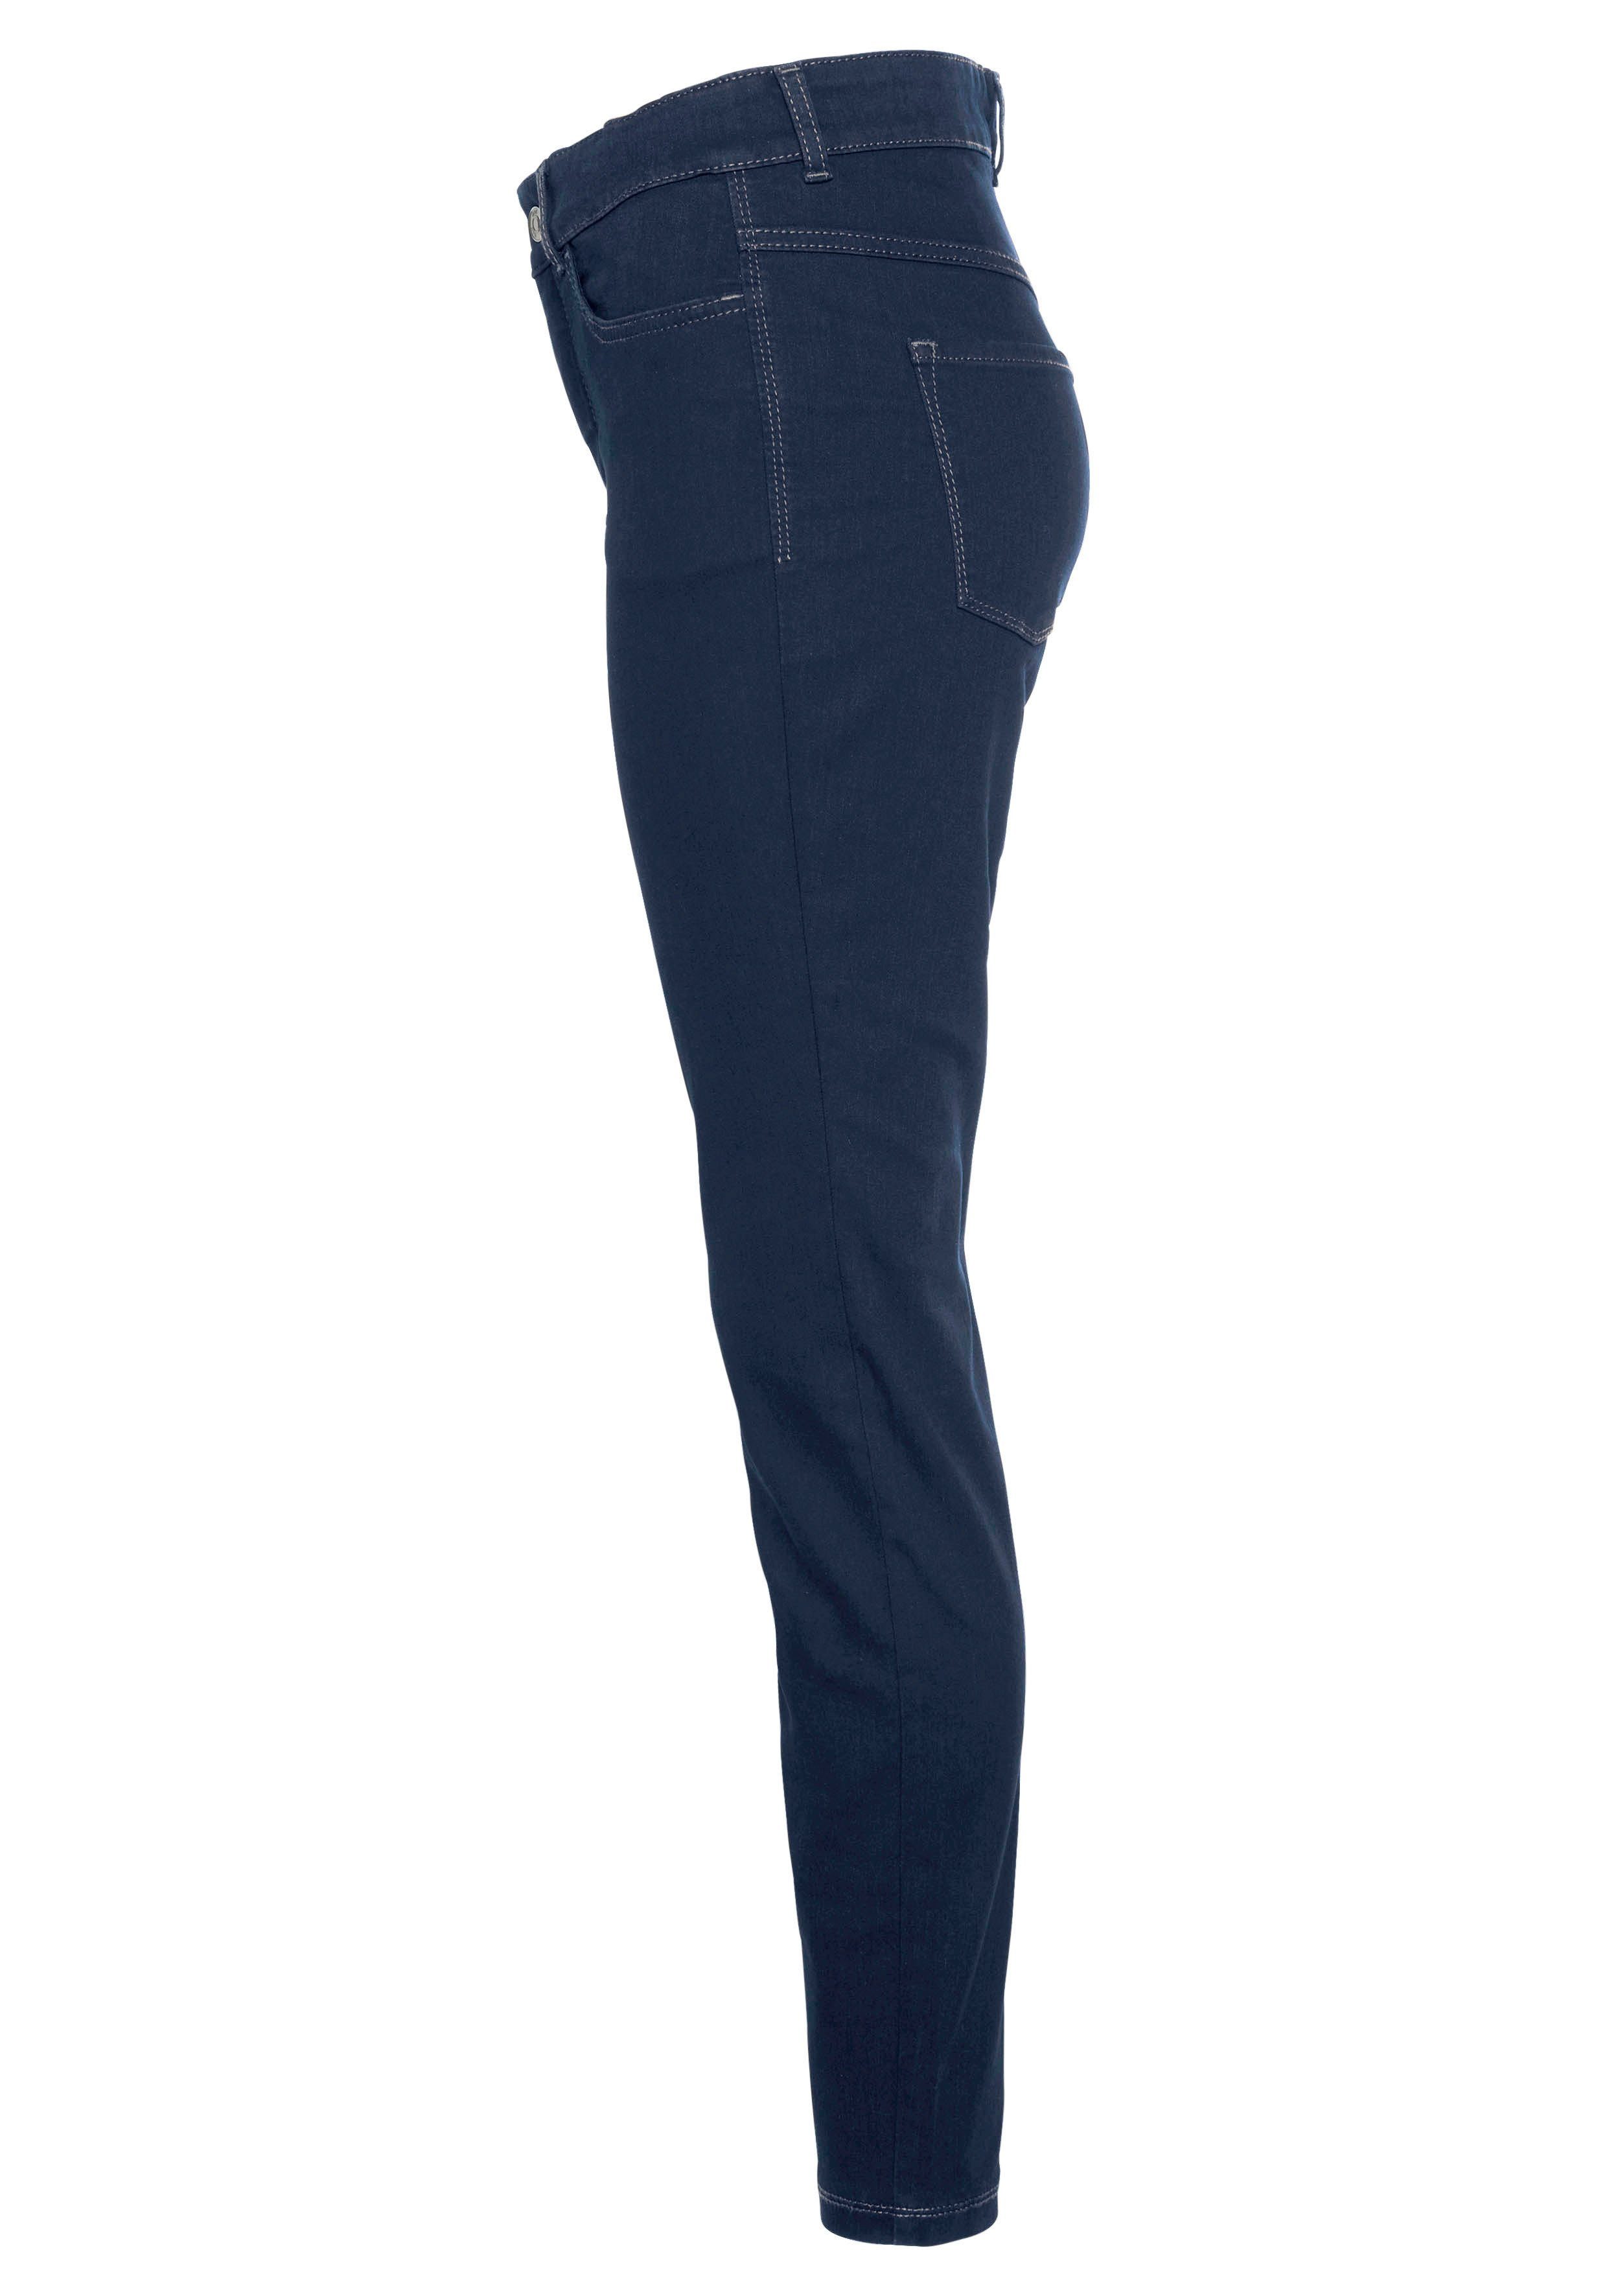 wash Tag Power-Stretch blue Skinny-fit-Jeans MAC den bequem new basic dark Qualität Hiperstretch-Skinny ganzen sitzt